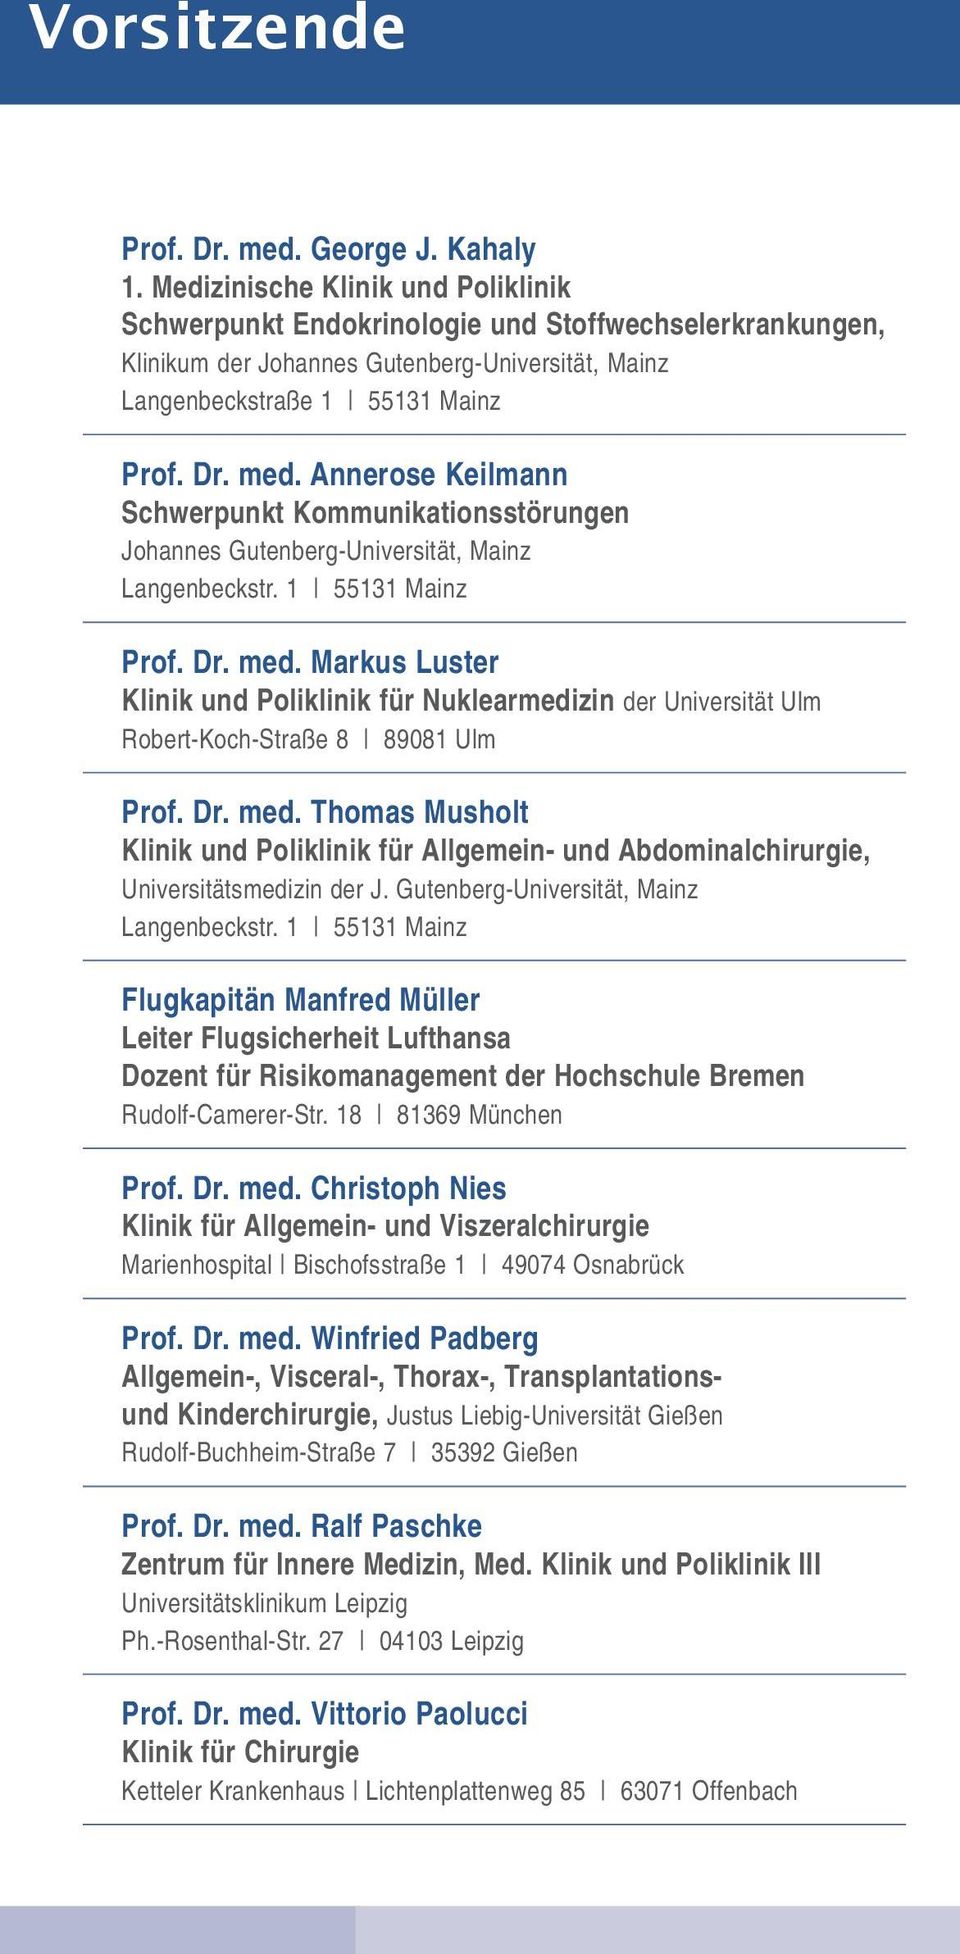 Annerose Keilmann Schwerpunkt Kommunikationsstörungen Johannes Gutenberg-Universität, Mainz Prof. Dr. med.